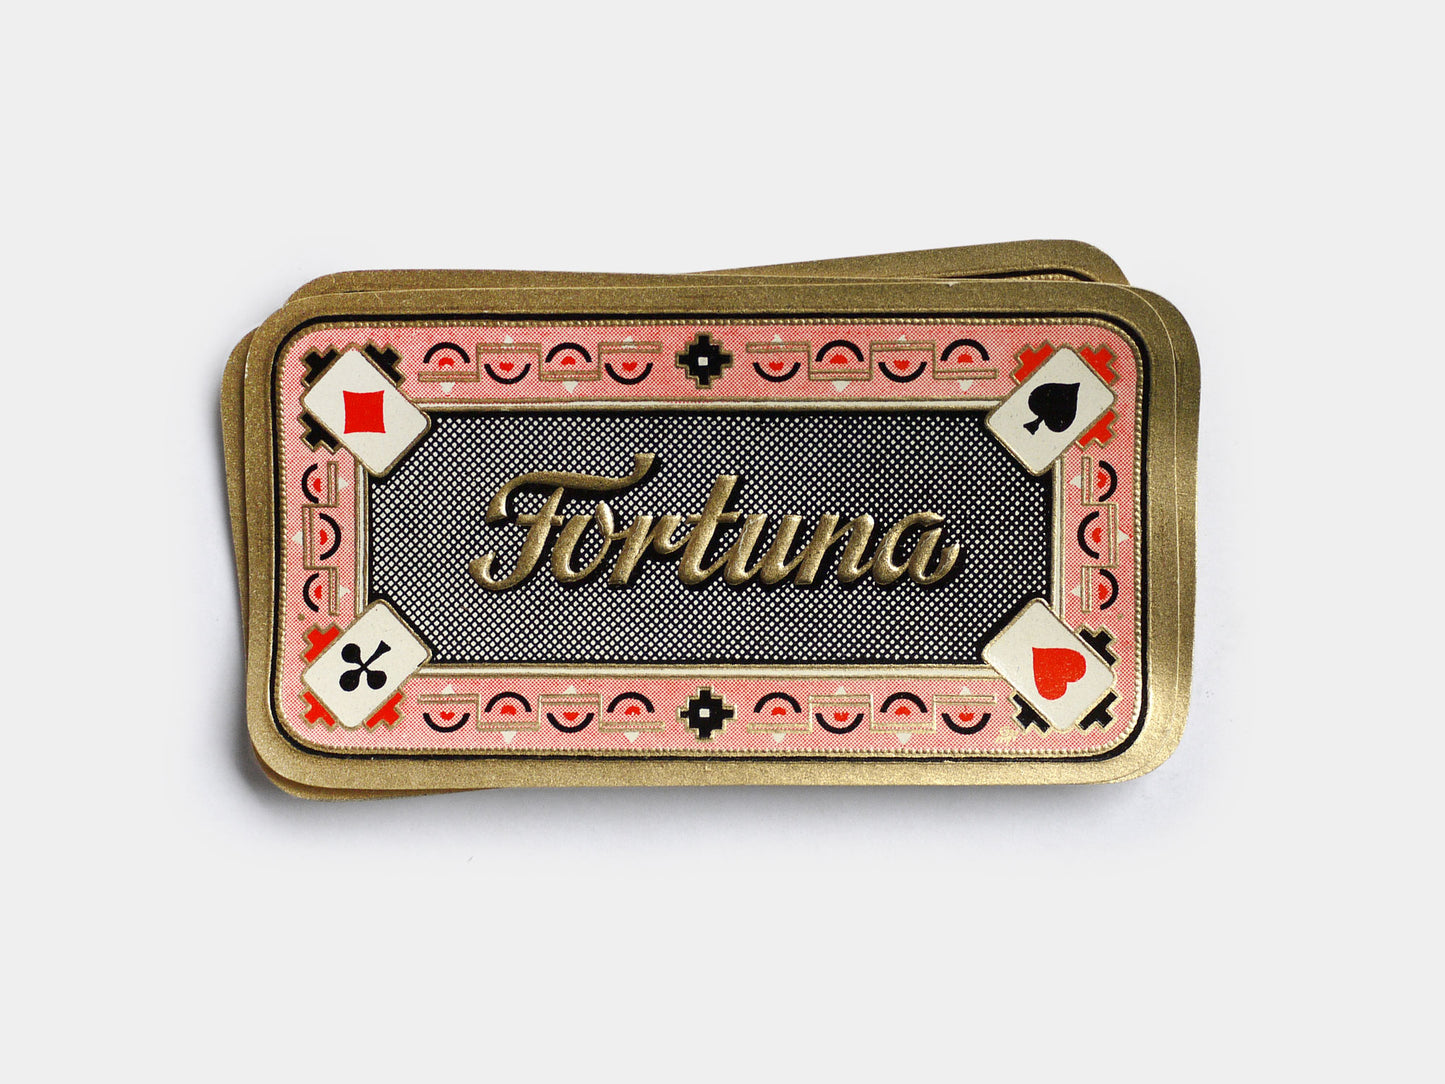 Fortuna Label (1940s)